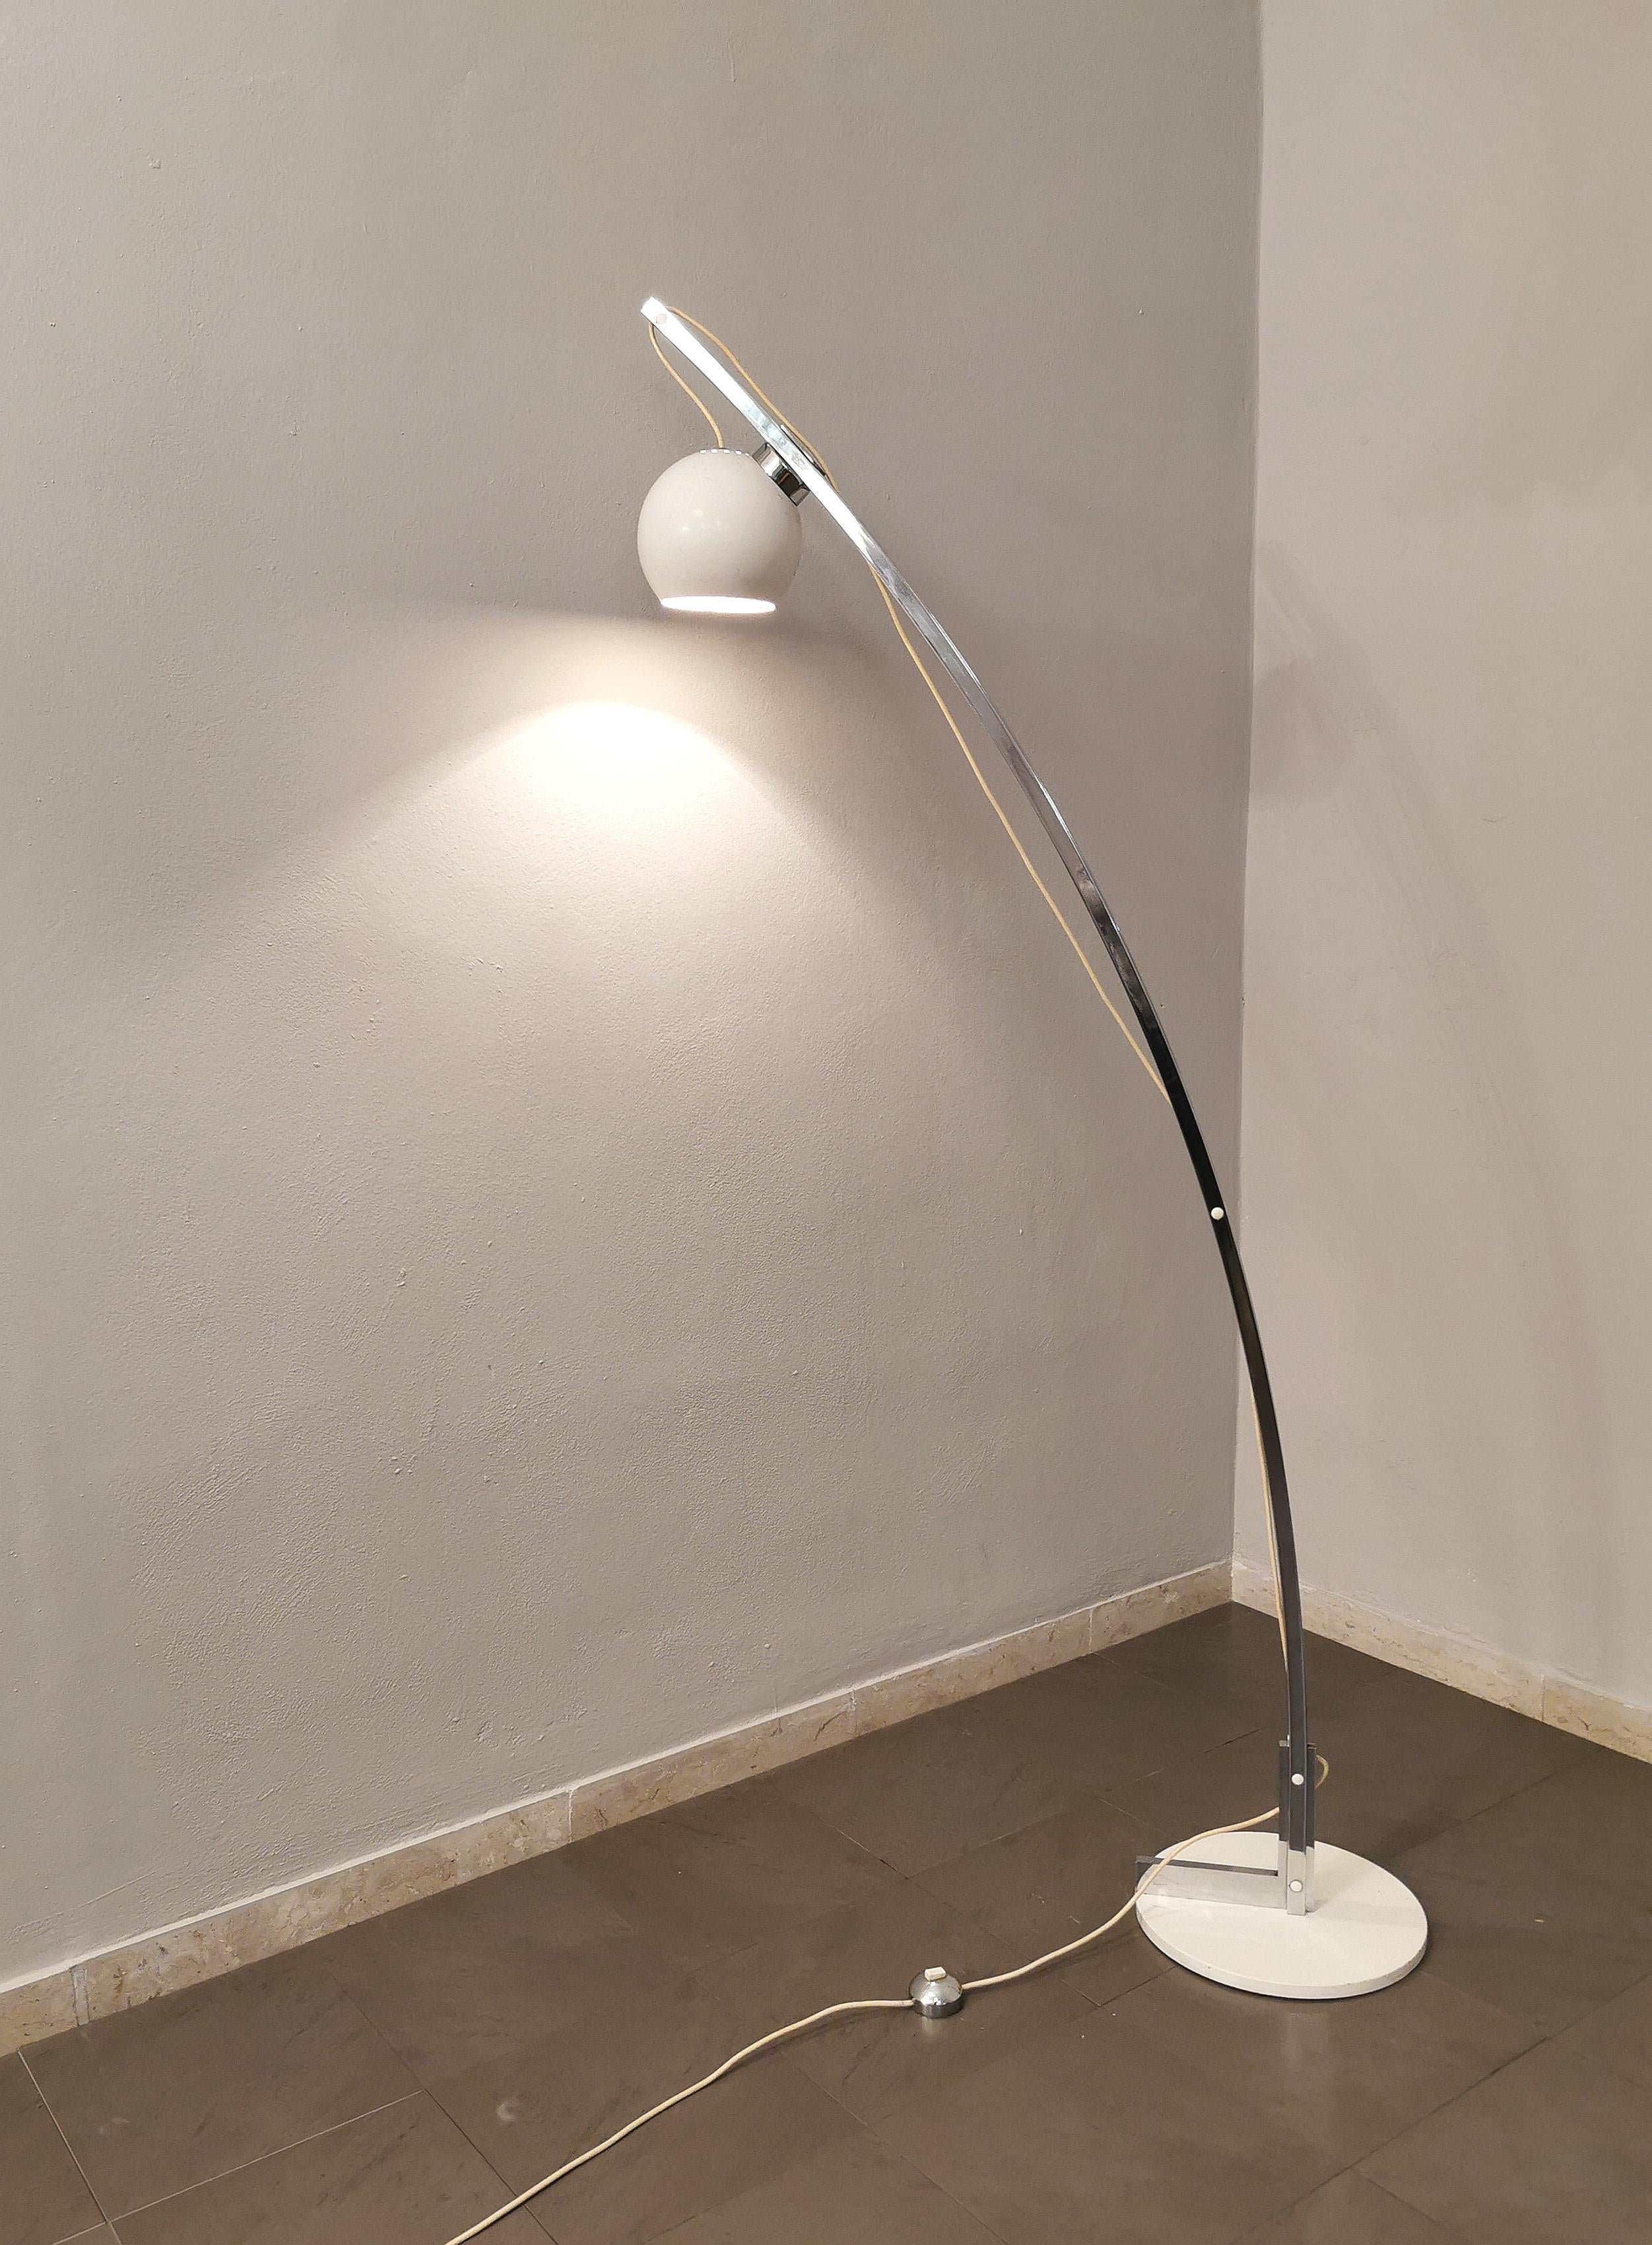 20th Century Midcentury Floor Lamp Reggiani Style Chromed Enameled Metal Italian Design 1970s For Sale